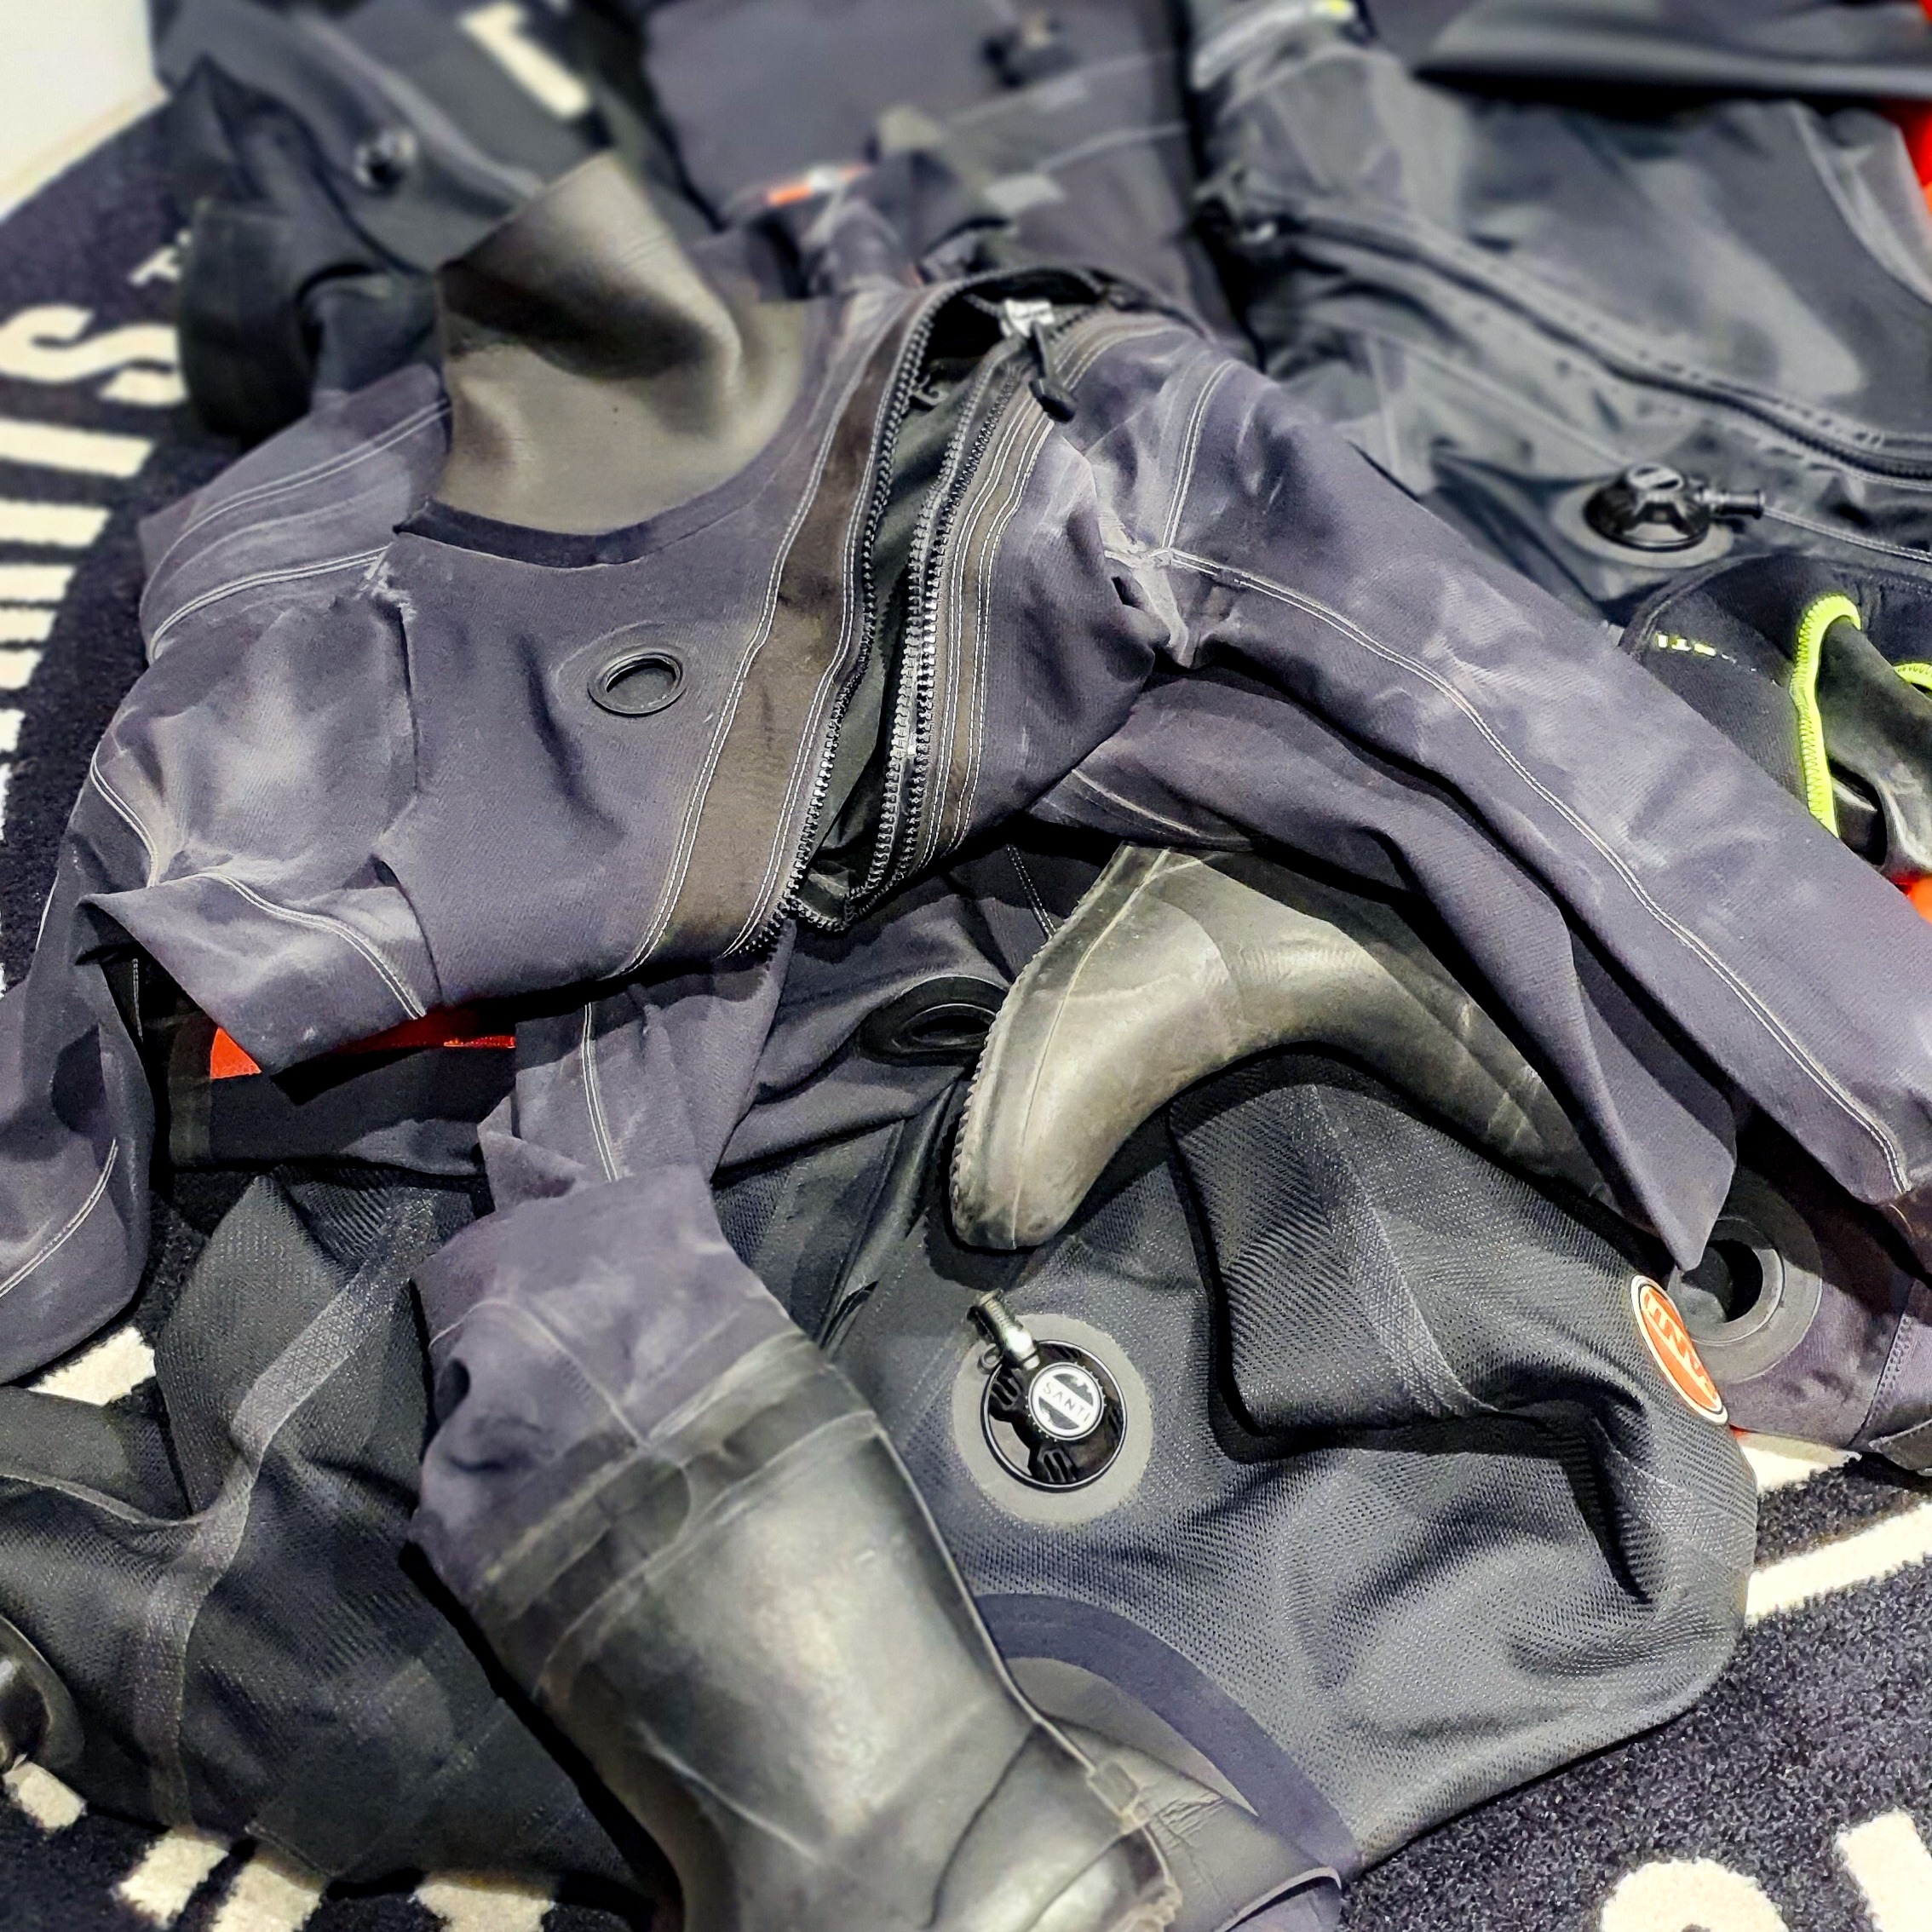 SANTI suchy oblek / dry suit ALEA Divers